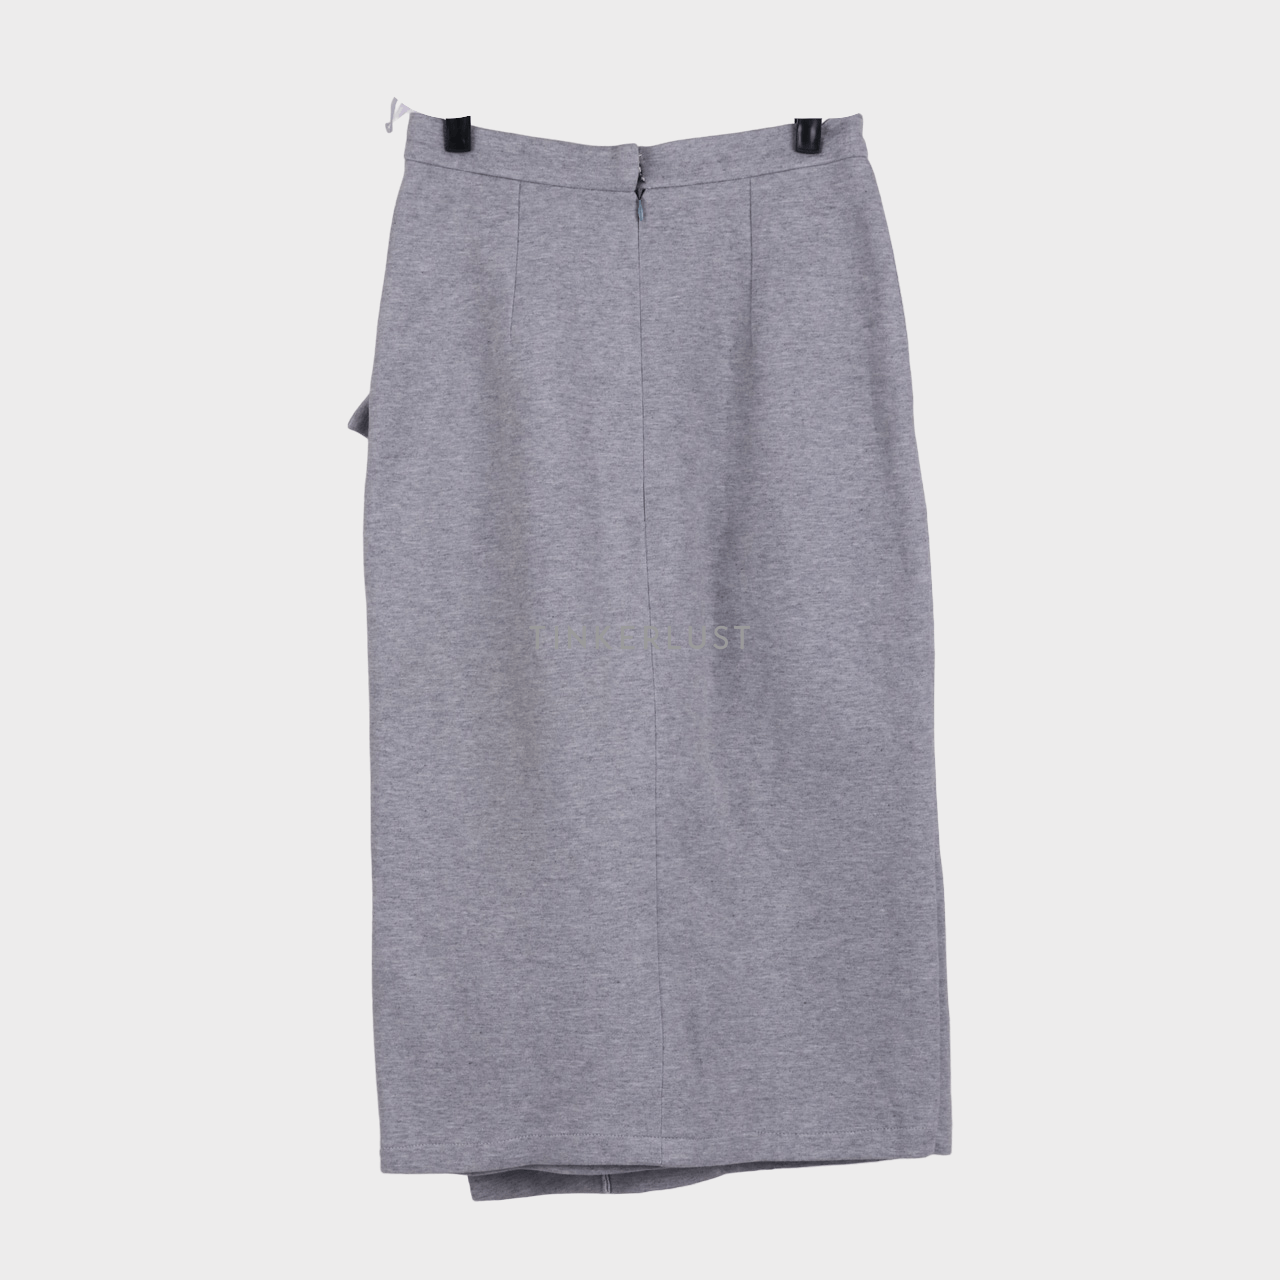 Touchup Atelier Grey Midi Skirt